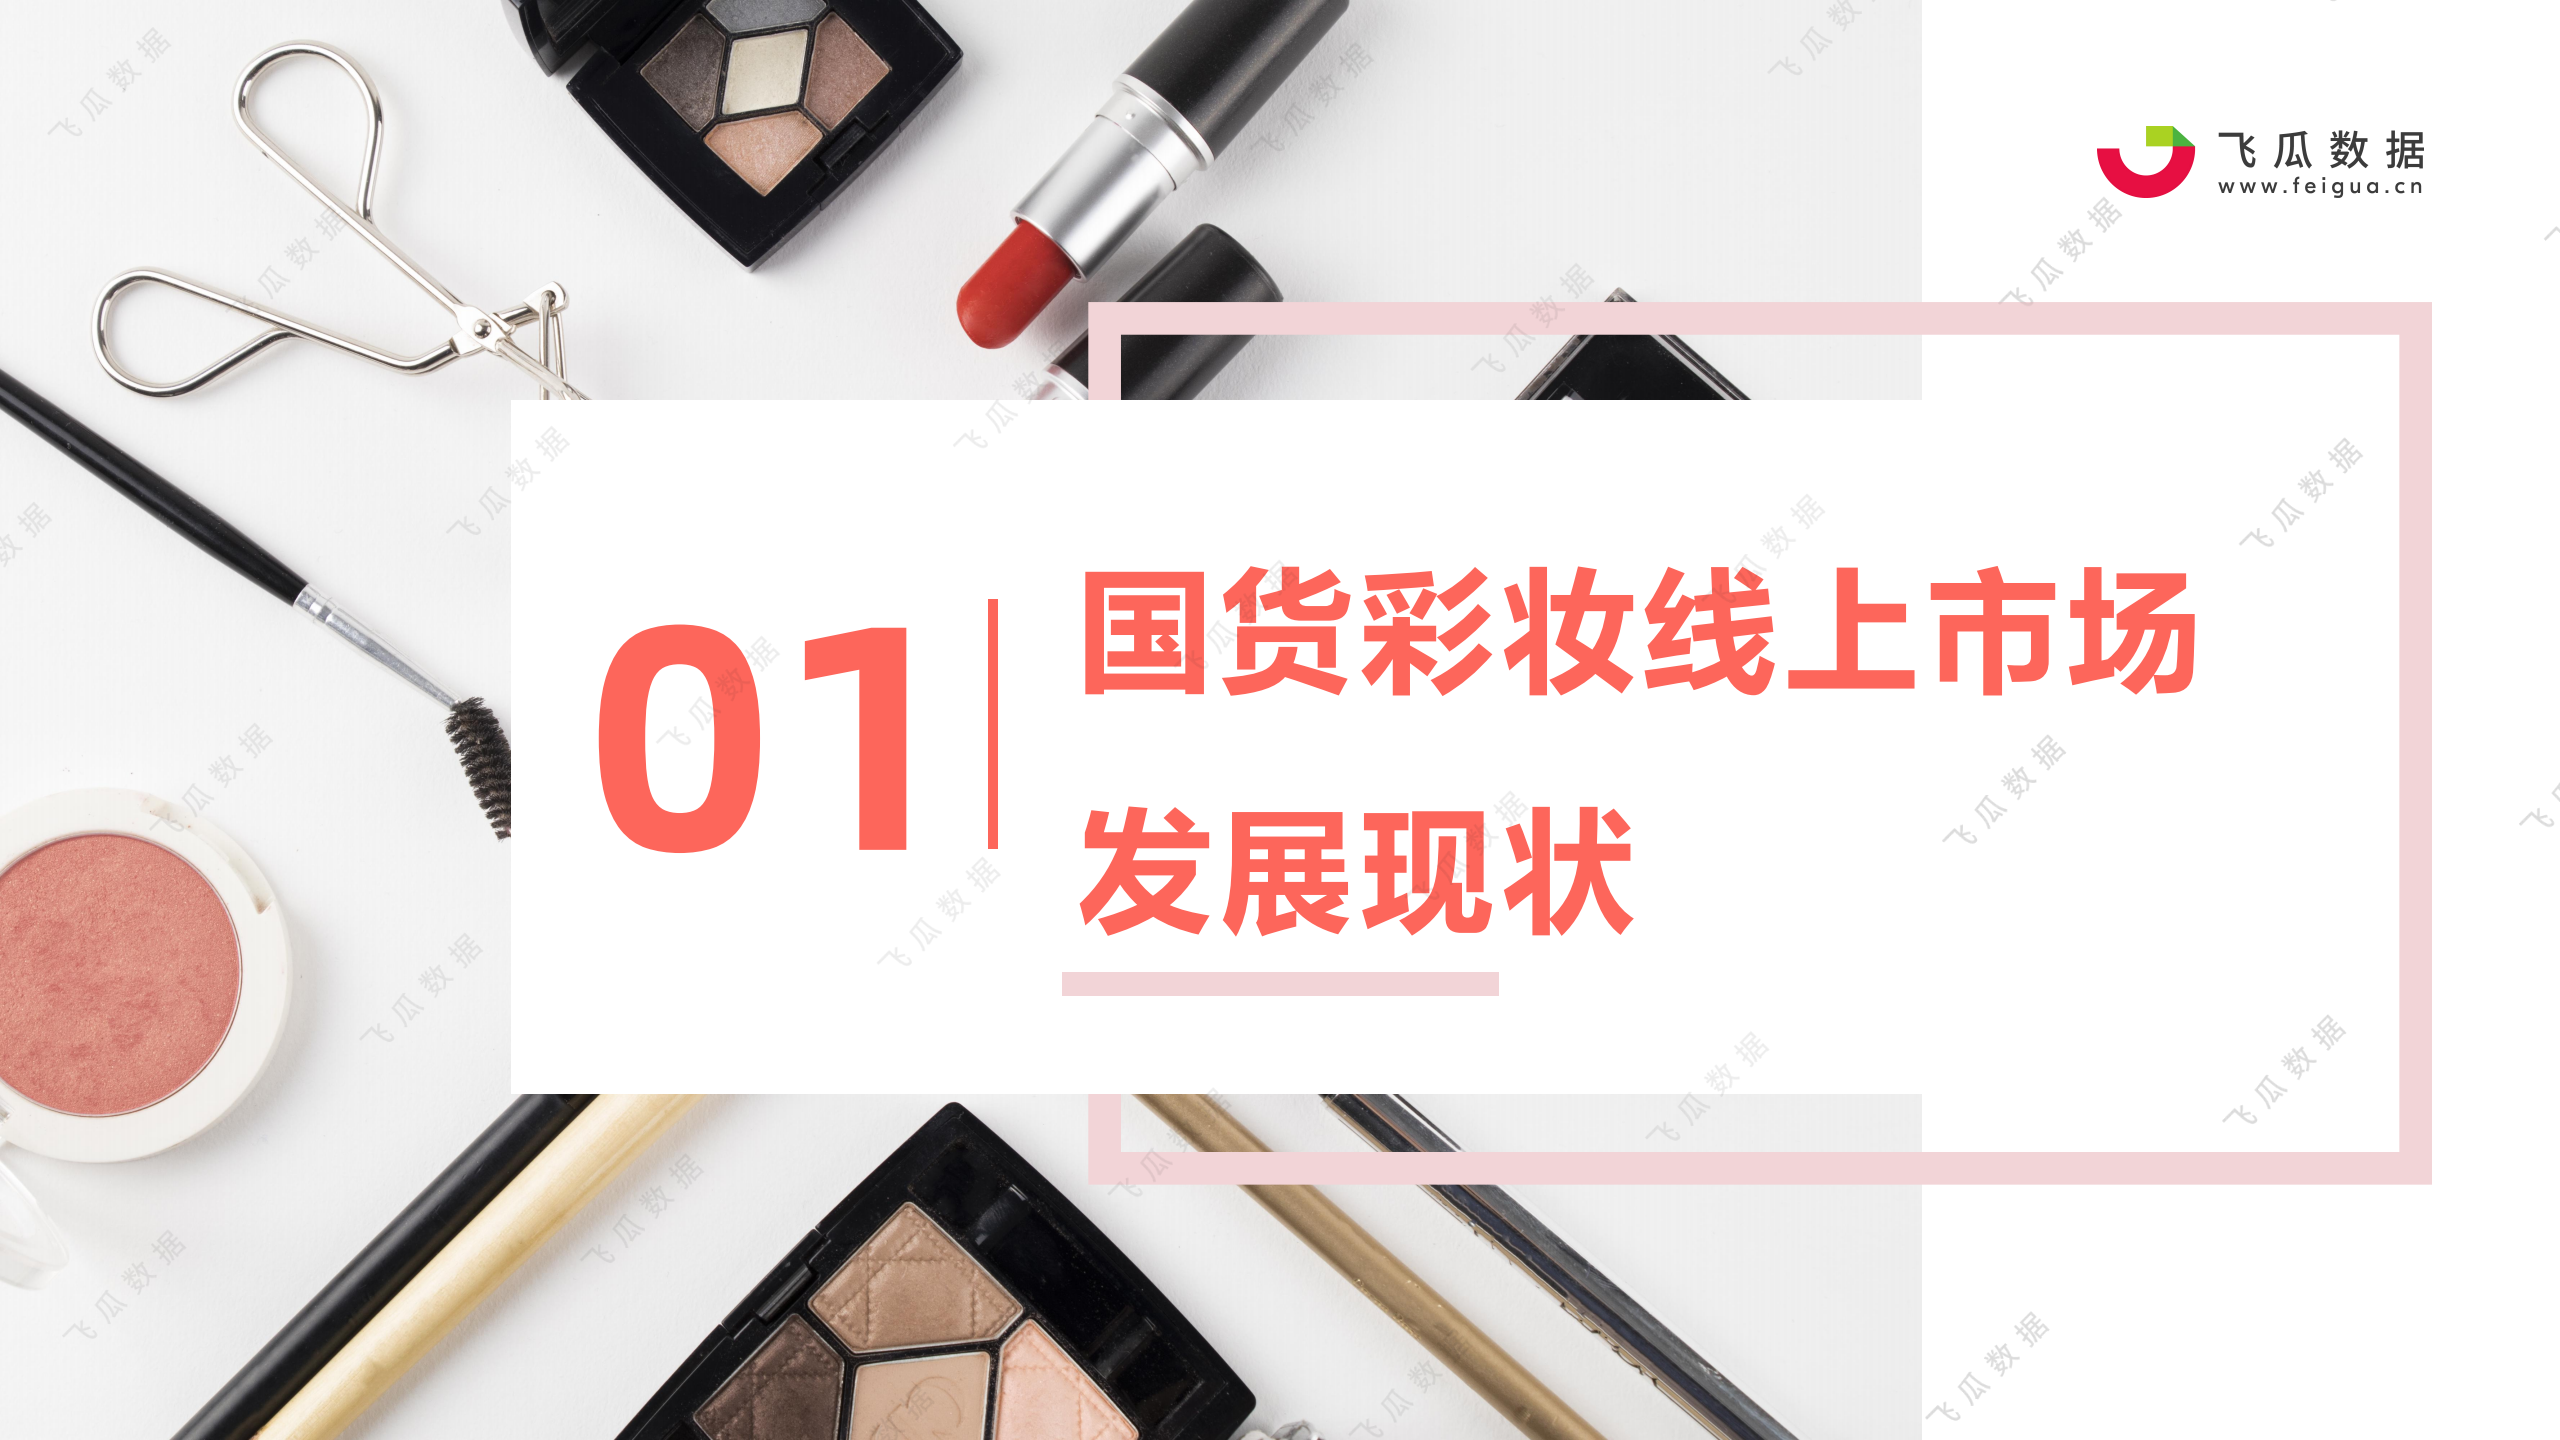 2021年国货彩妆品牌推广营销趋势